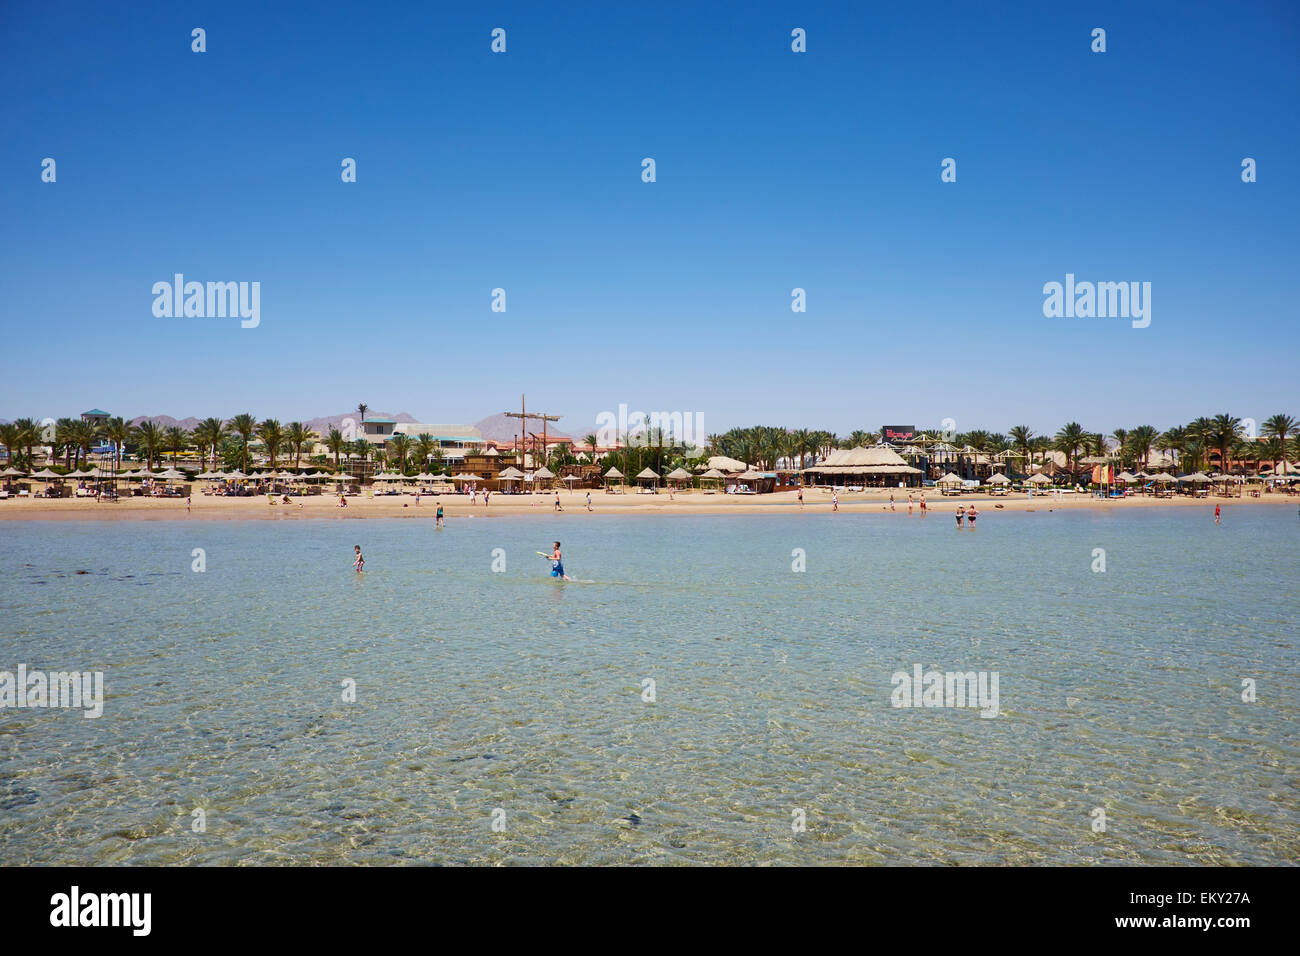 Der Strand am Roten Meer Meerenge von Tiran Sharm El Sheikh Ägypten Stockfoto